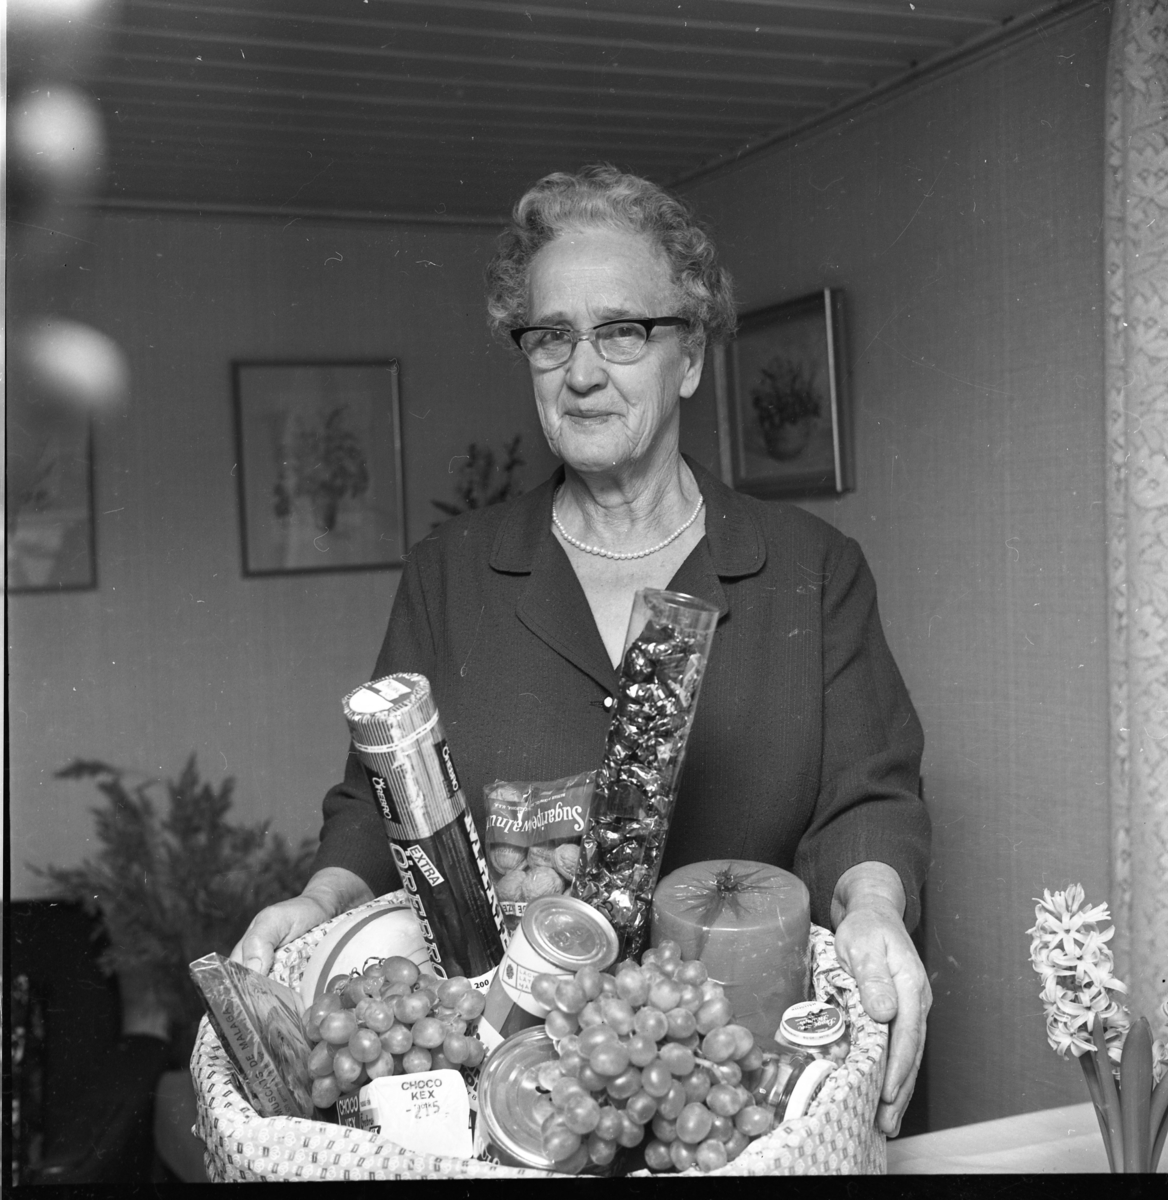 Fru Ester Gustavsson i Högaberg visar upp sin vinstkorg med vindruvor, ost, kex och konserver.